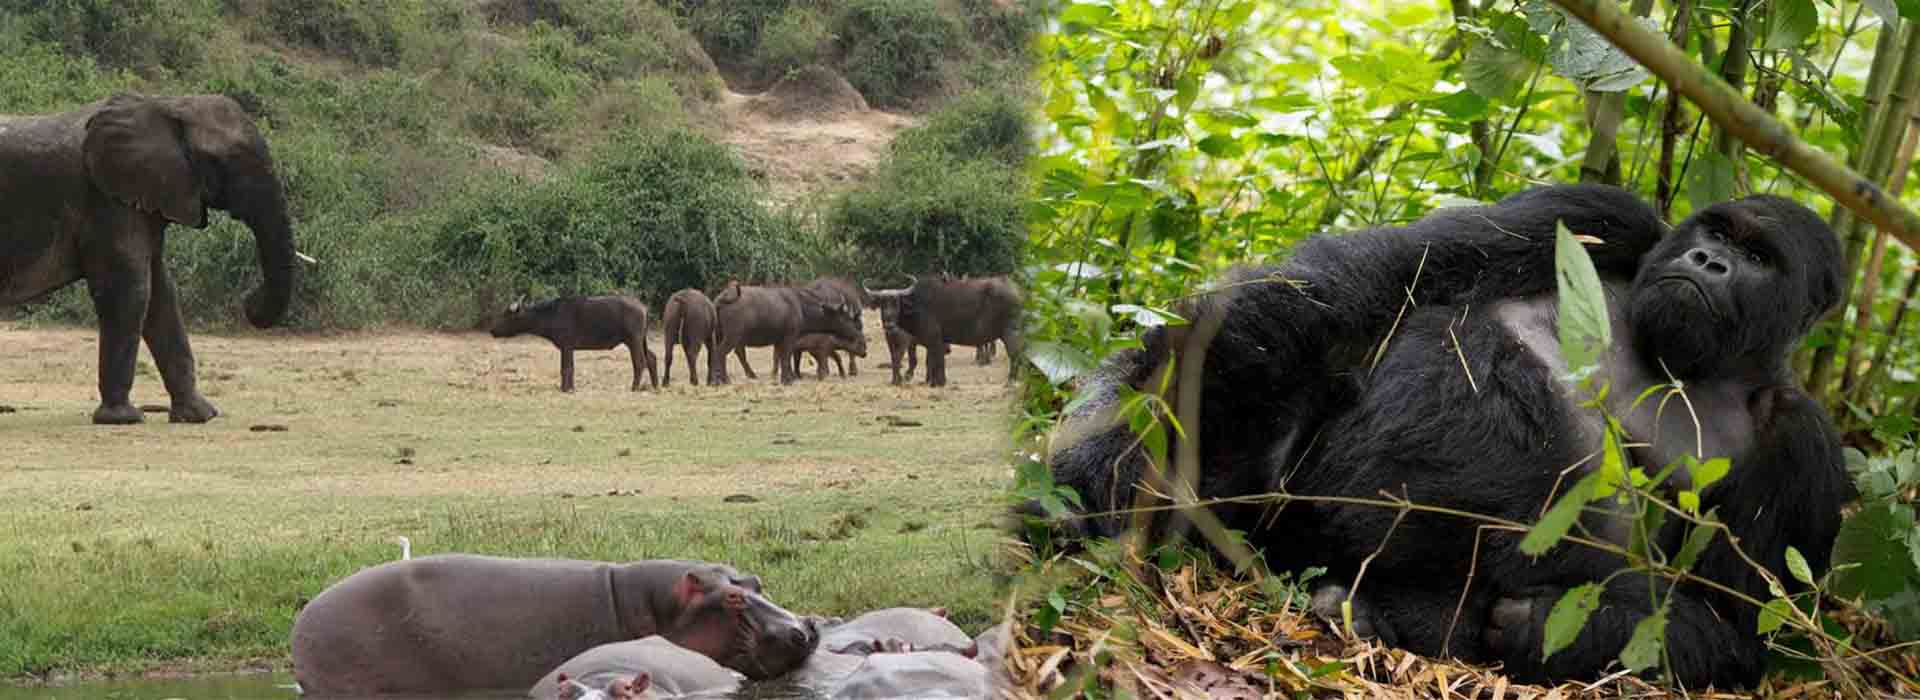 5 Days Uganda Gorilla and Wildlife Safari